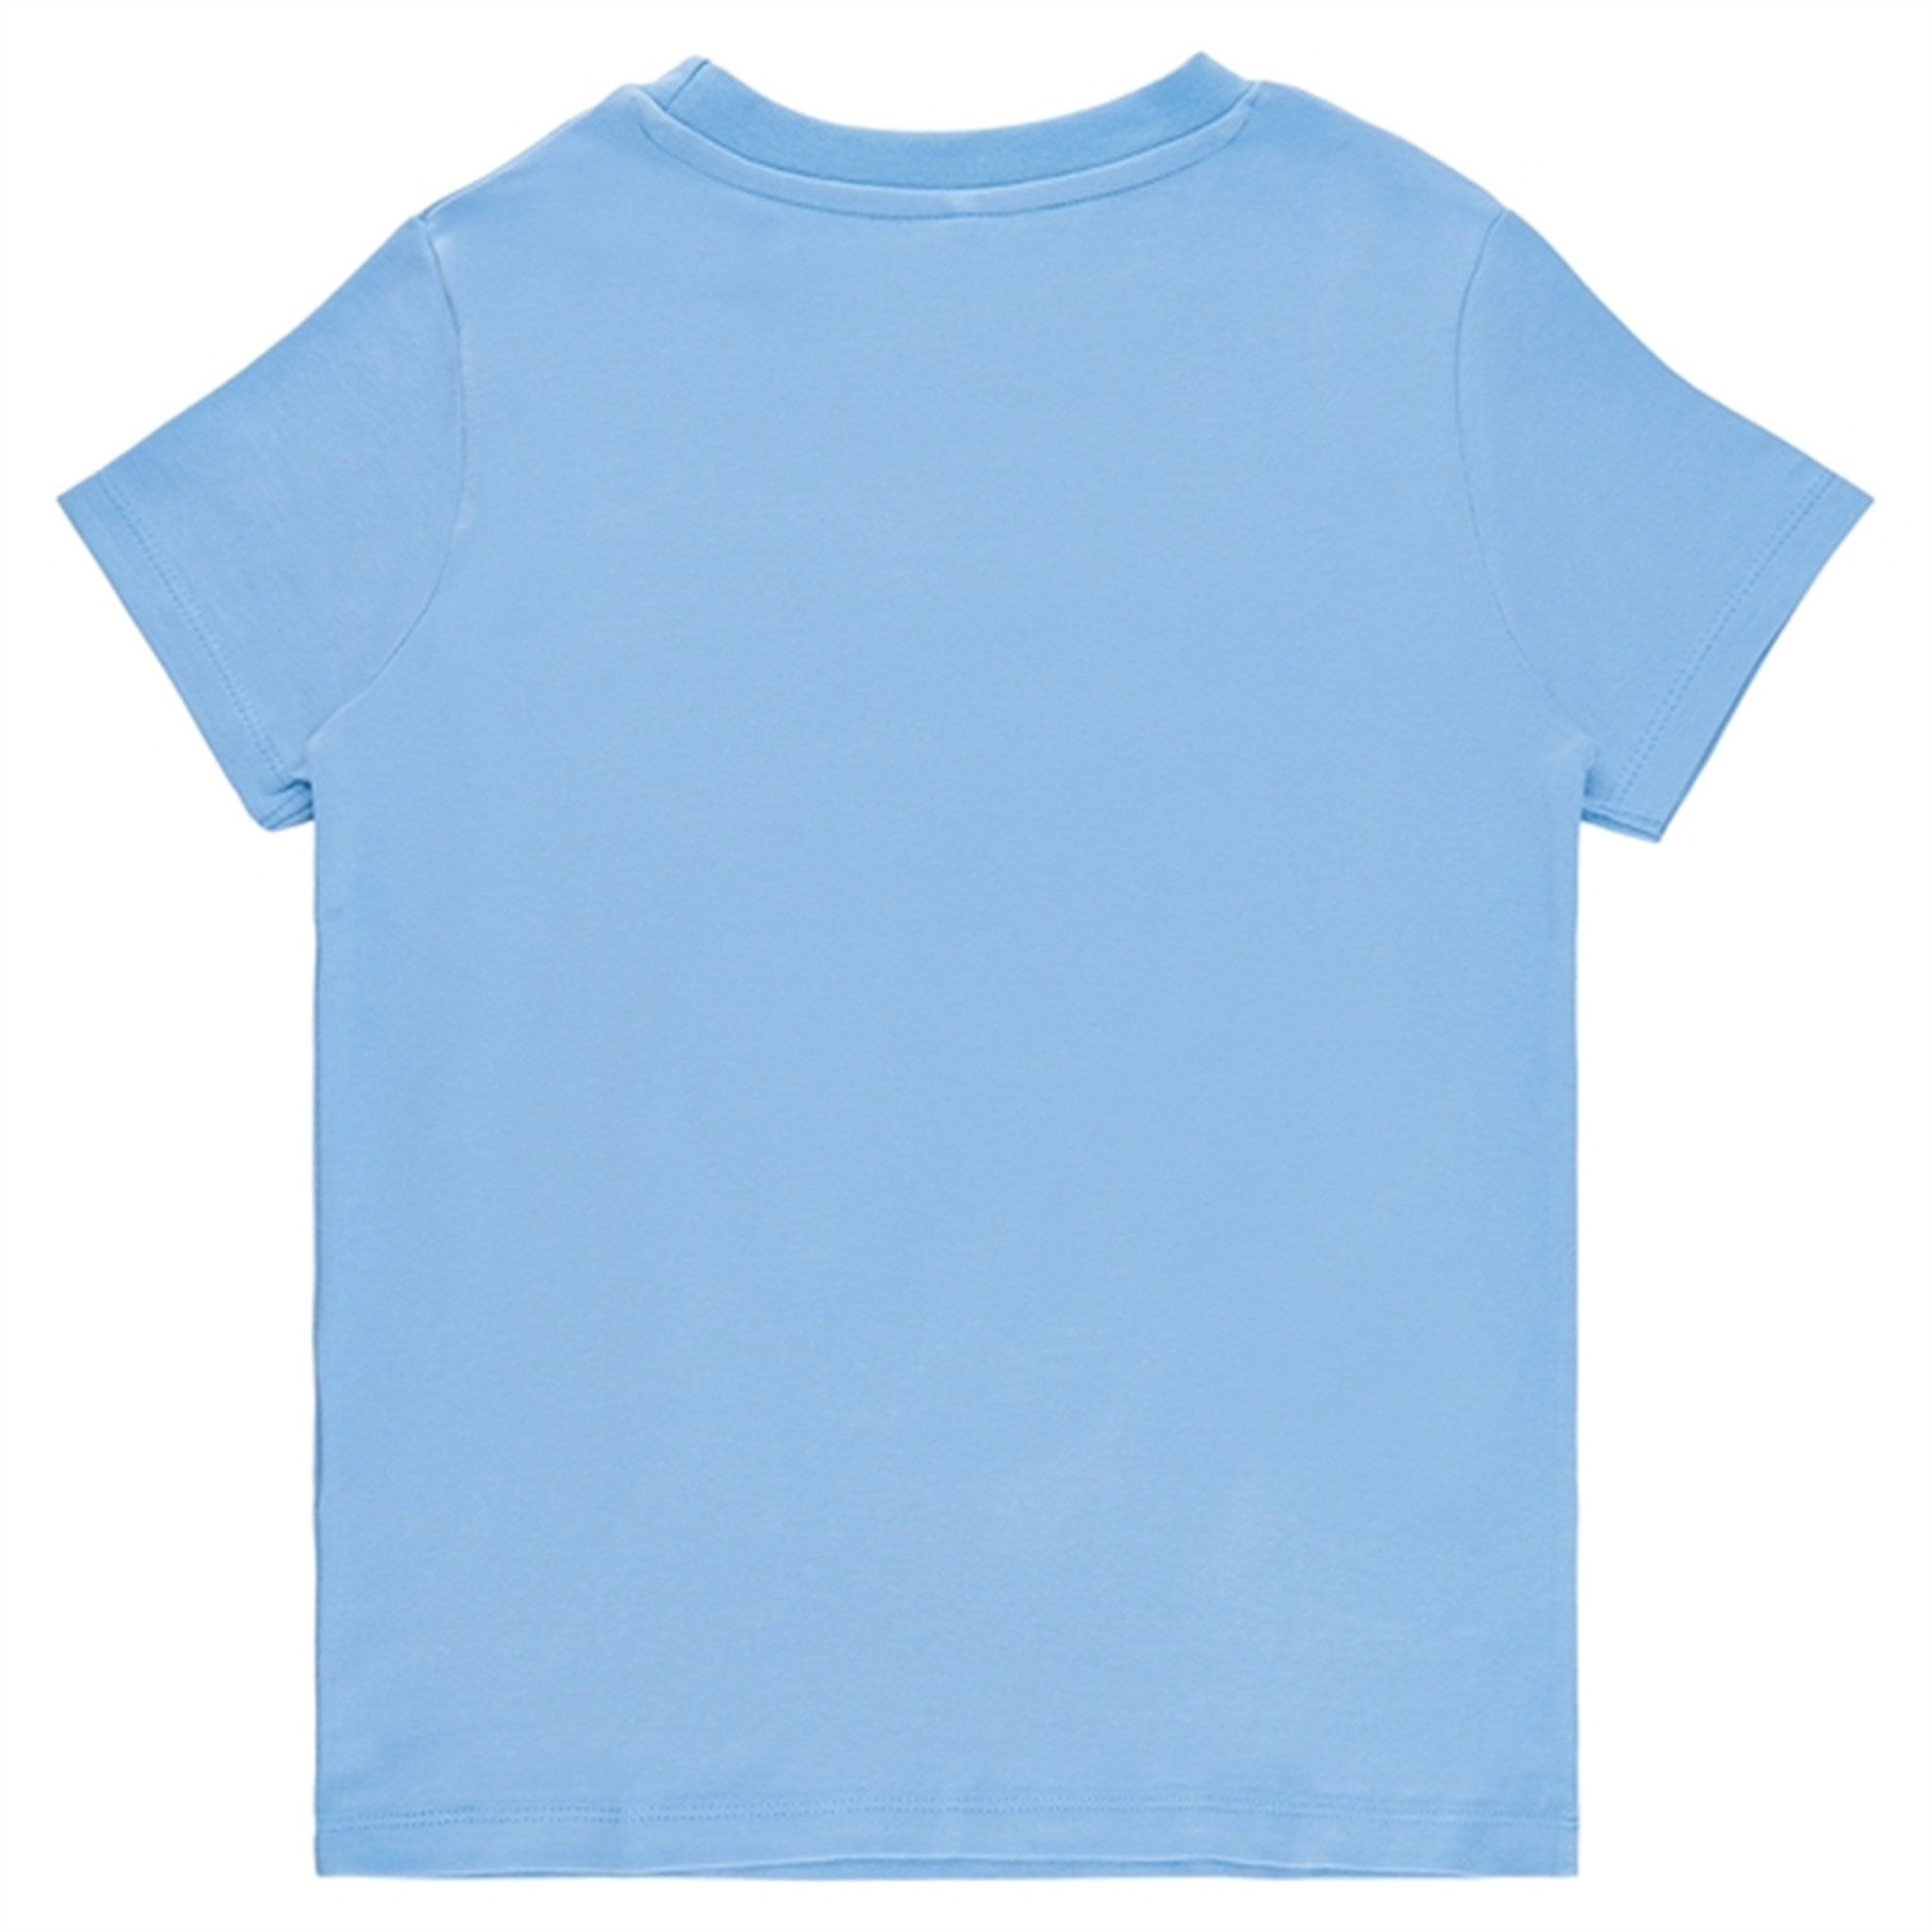 THE NEW Bel Air Blue Feach T-shirt 3